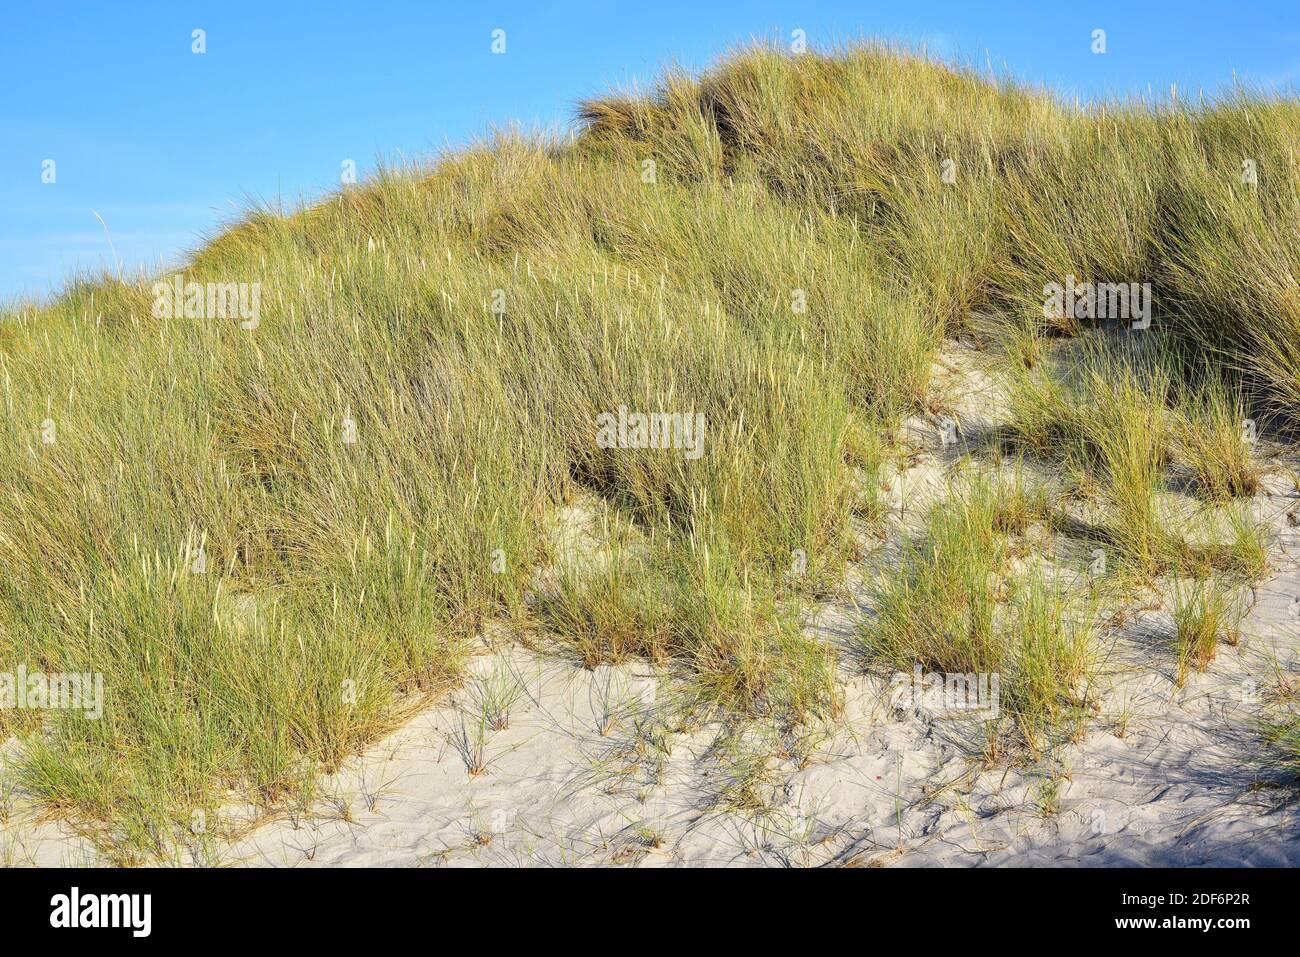 Europäisches Strandgras oder europäisches Marrammgras (Ammophila arenaria) ist eine mehrjährige Pflanze, die an den Küsten Europas und Nordafrikas beheimatet ist. Dieses Foto war Stockfoto